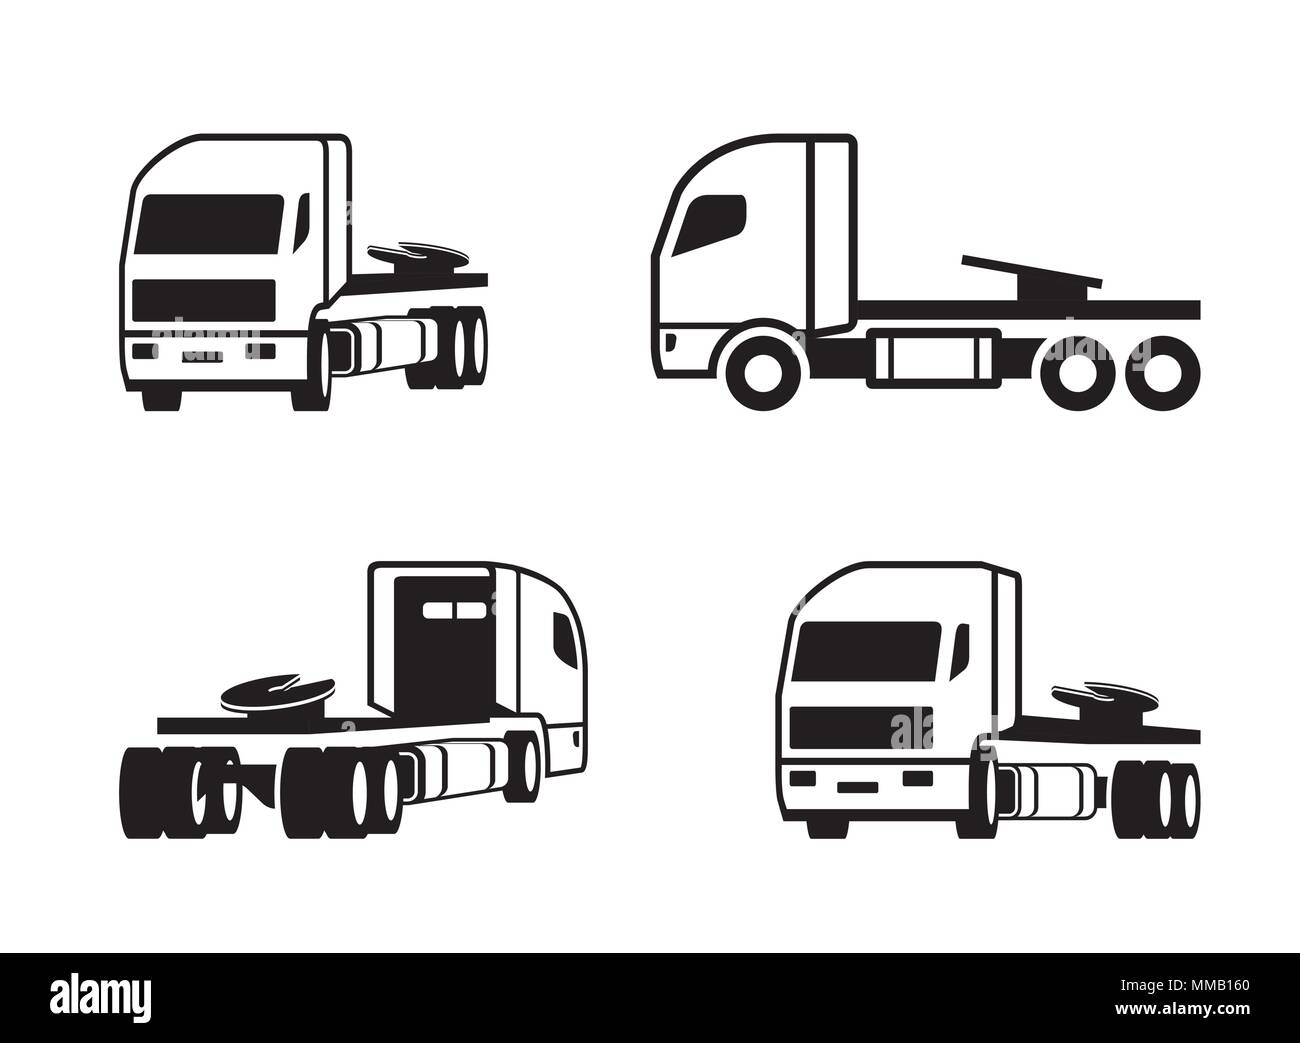 Lkw Traktor in verschiedenen Perspektive - Vector Illustration Stock Vektor